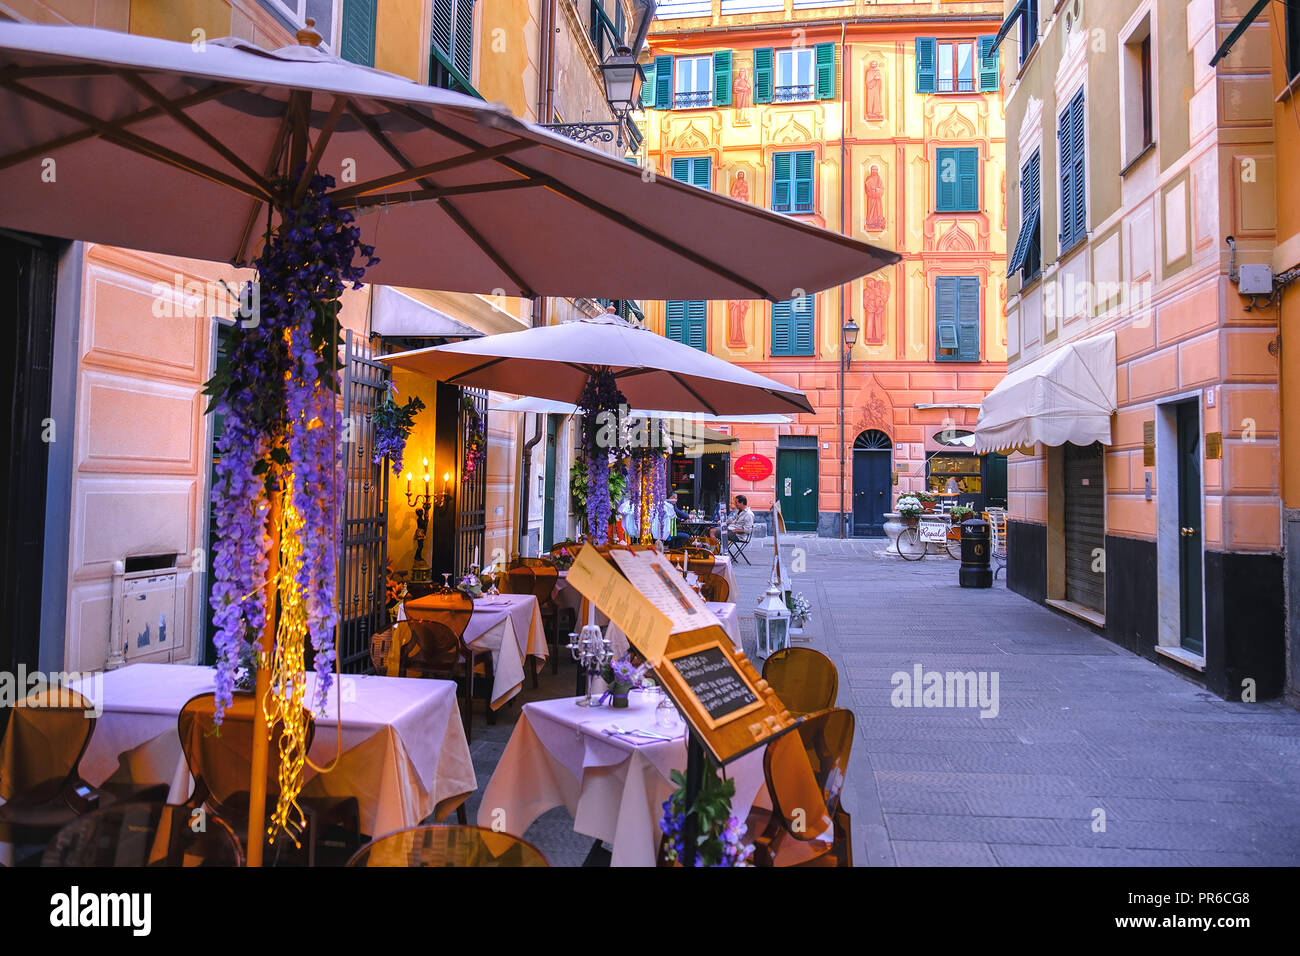 Le bistrot italien romantique restaurant pour dîner en italie Banque D'Images